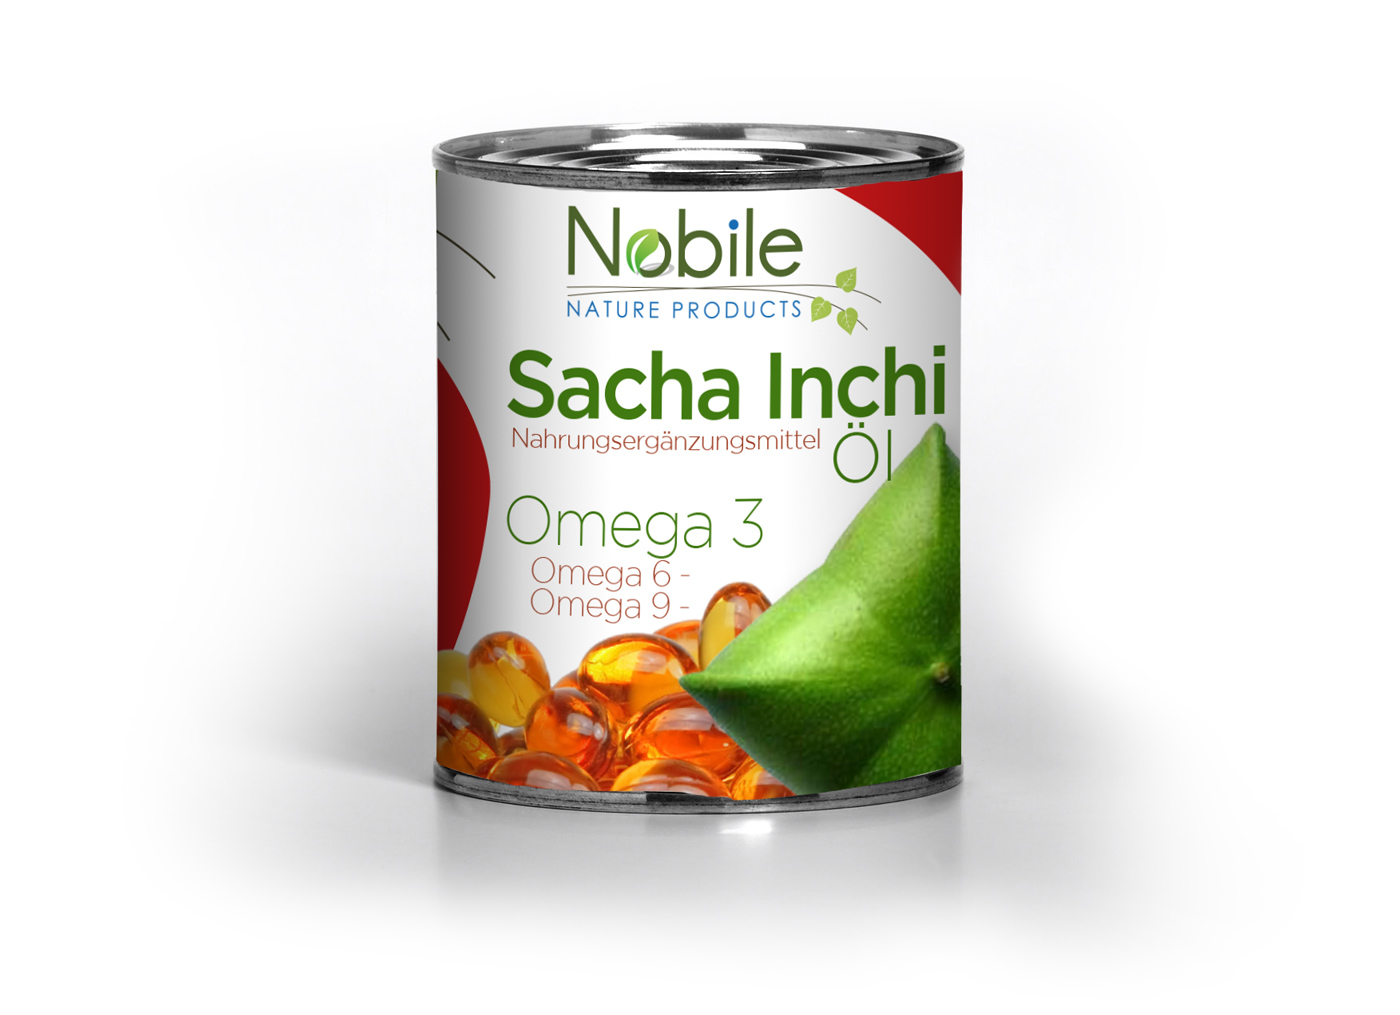 Diseño gráfico y creativo de etiquetas de productos para Sacha Inchi de la empresa Nobile Nature Products en Alemania